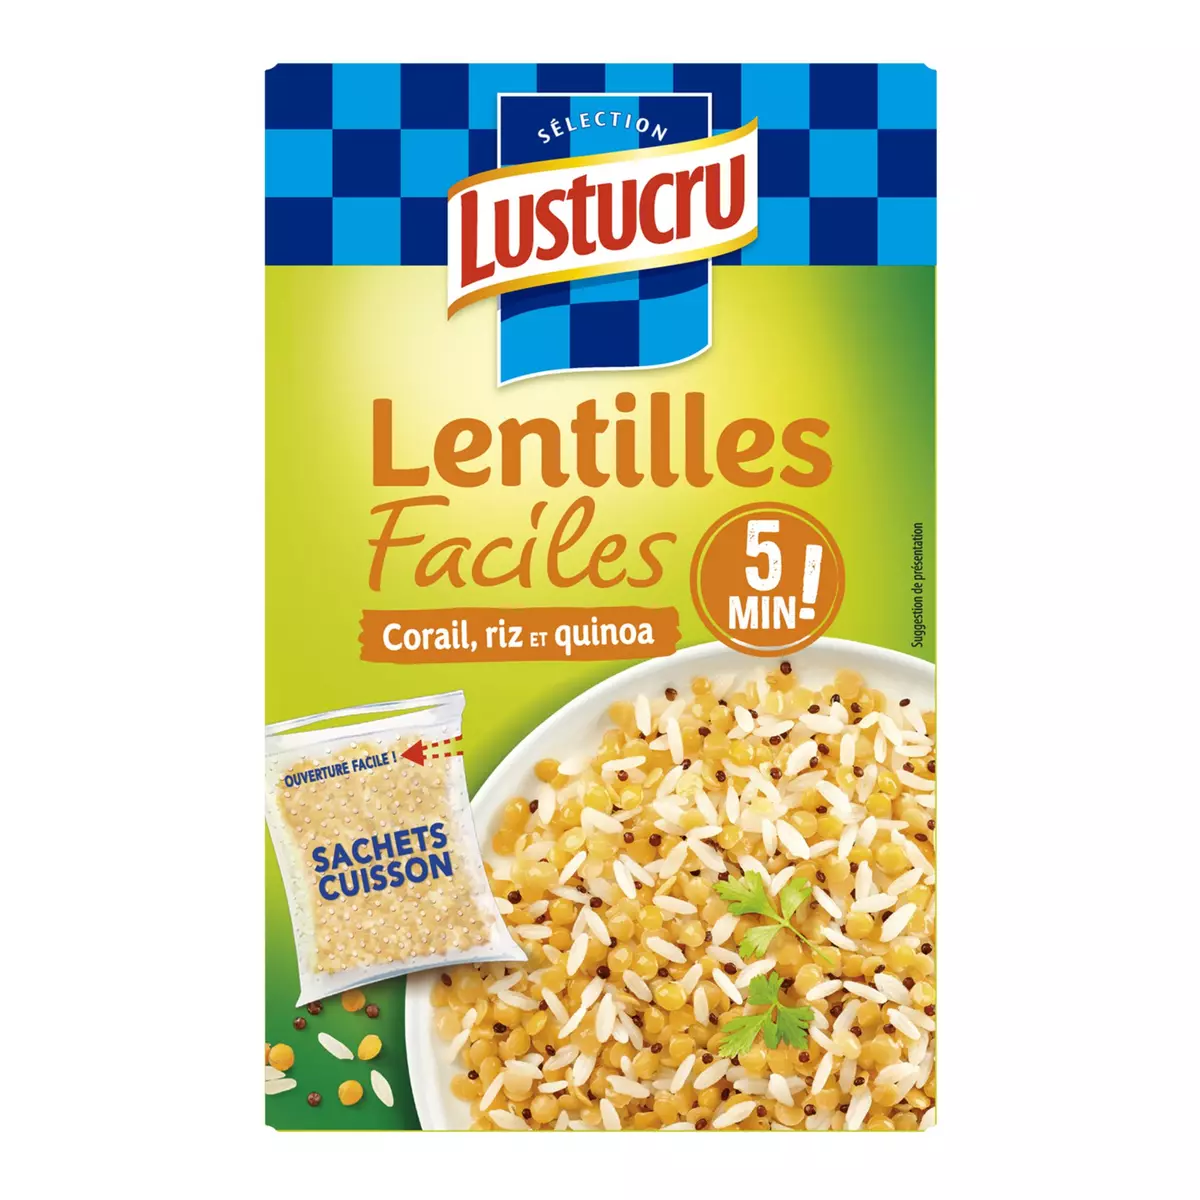 LUSTUCRU Lentilles facile lentilles corail riz quinoa sachets cuisson prêt en 5 min 2x150g